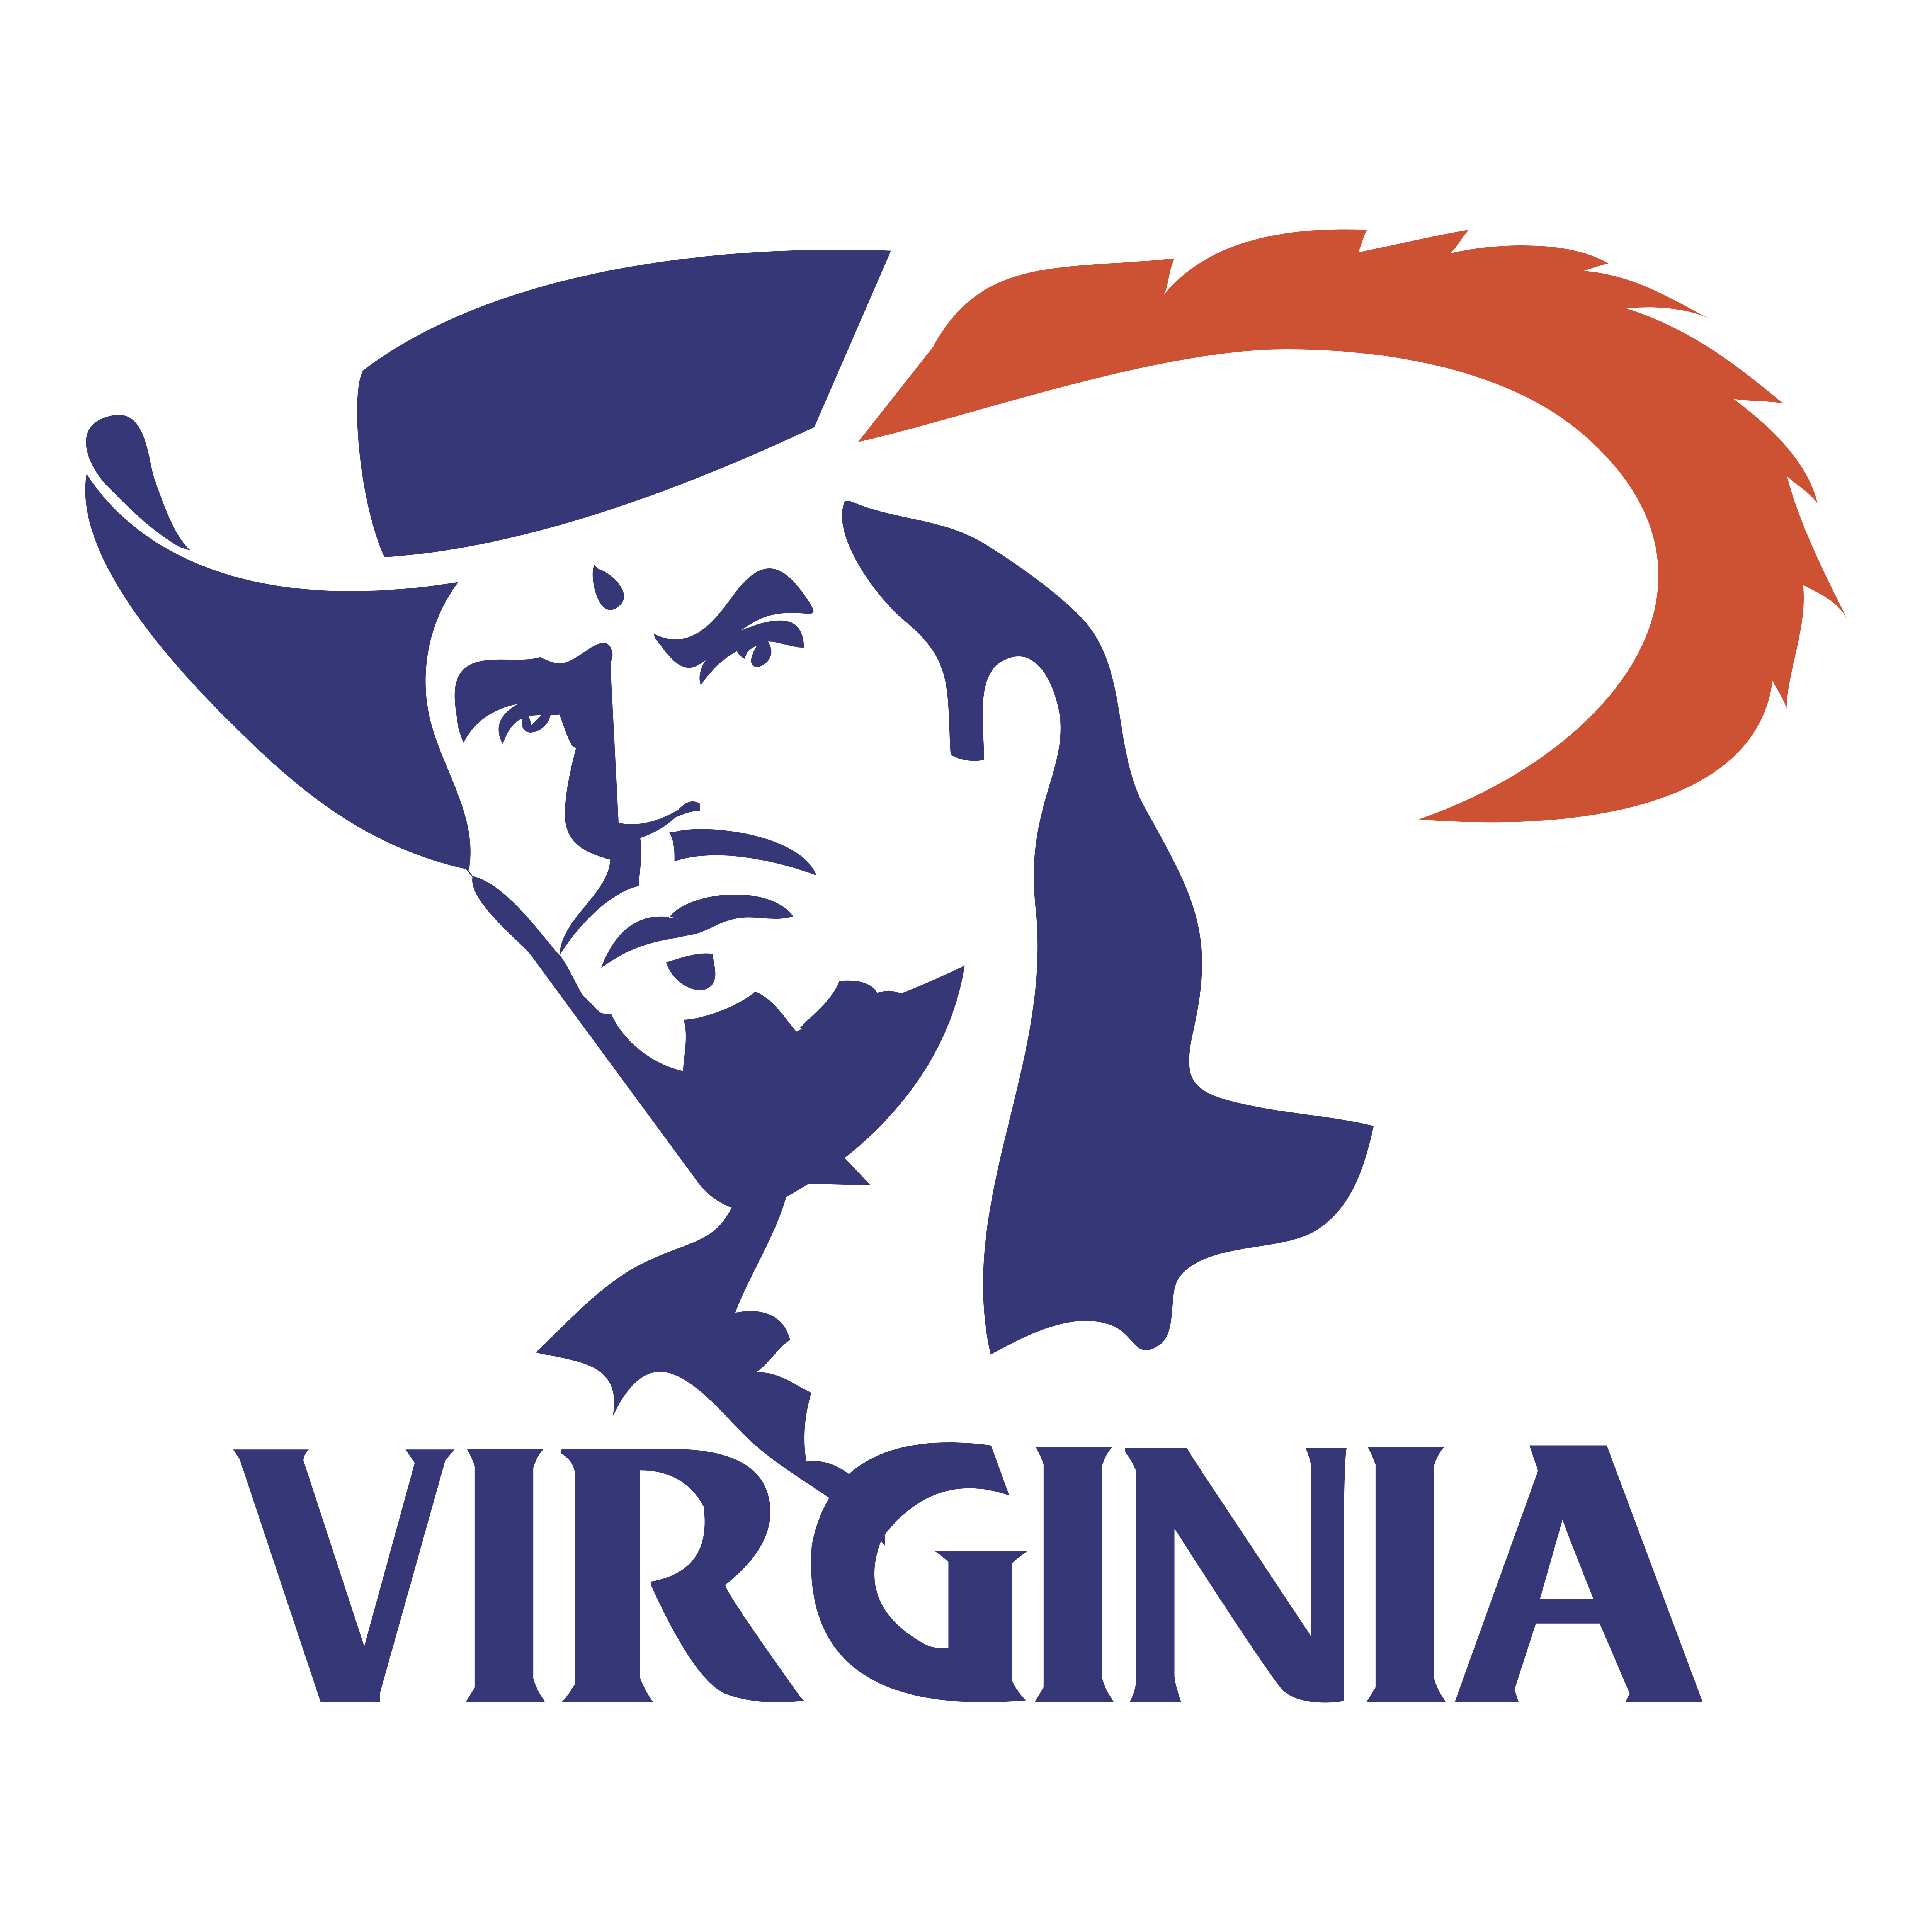 Virginia Logo - Virginia Cavaliers – Logos Download